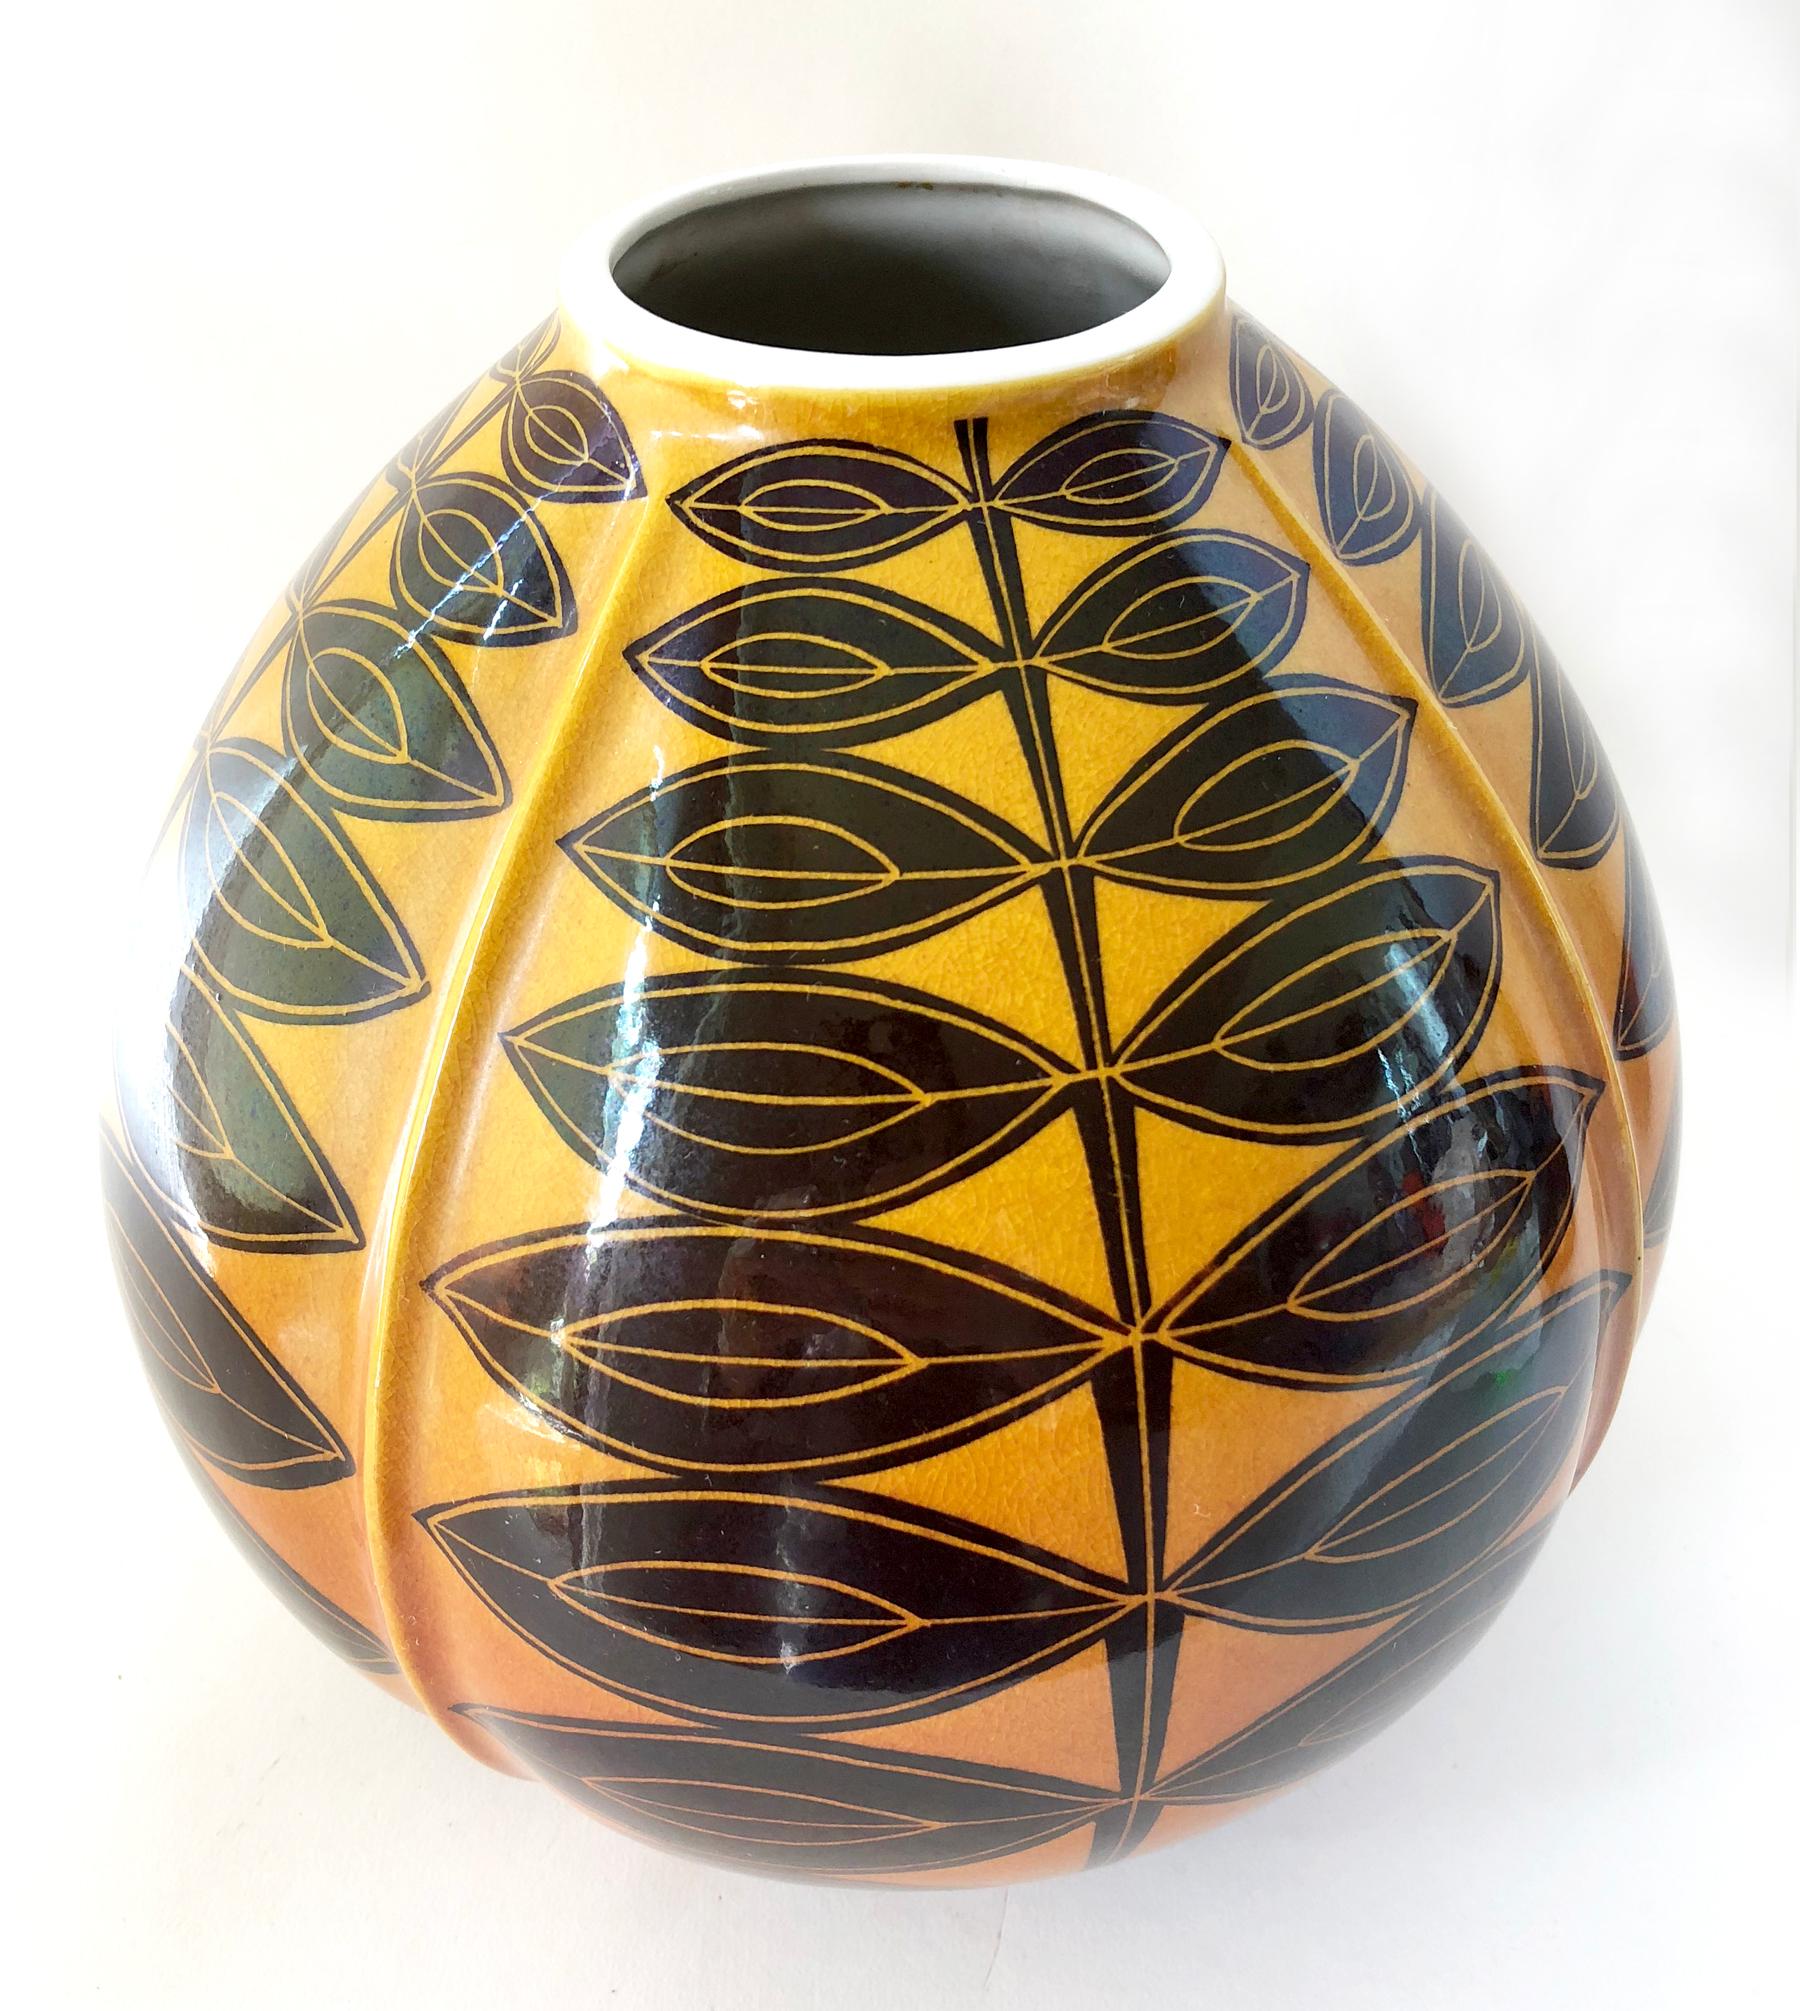 Large-scale Satsuma porcelain vase, hand glazed in gold to copper gradation with black modernist leaf design. Vase measures 9.5